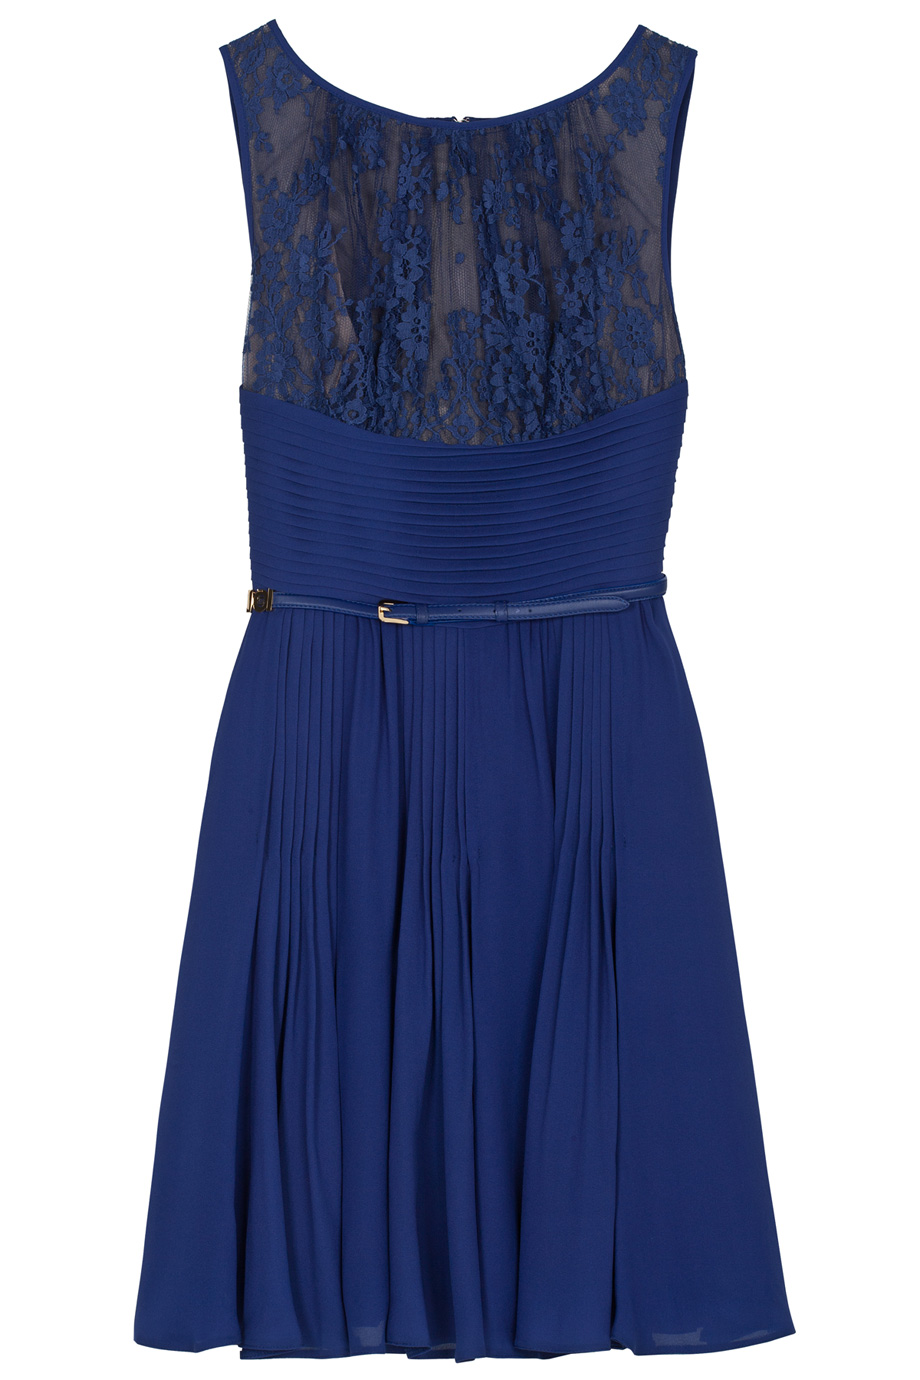 Elie Saab Lace Top Slk Skirt Sht Dress in Blue | Lyst